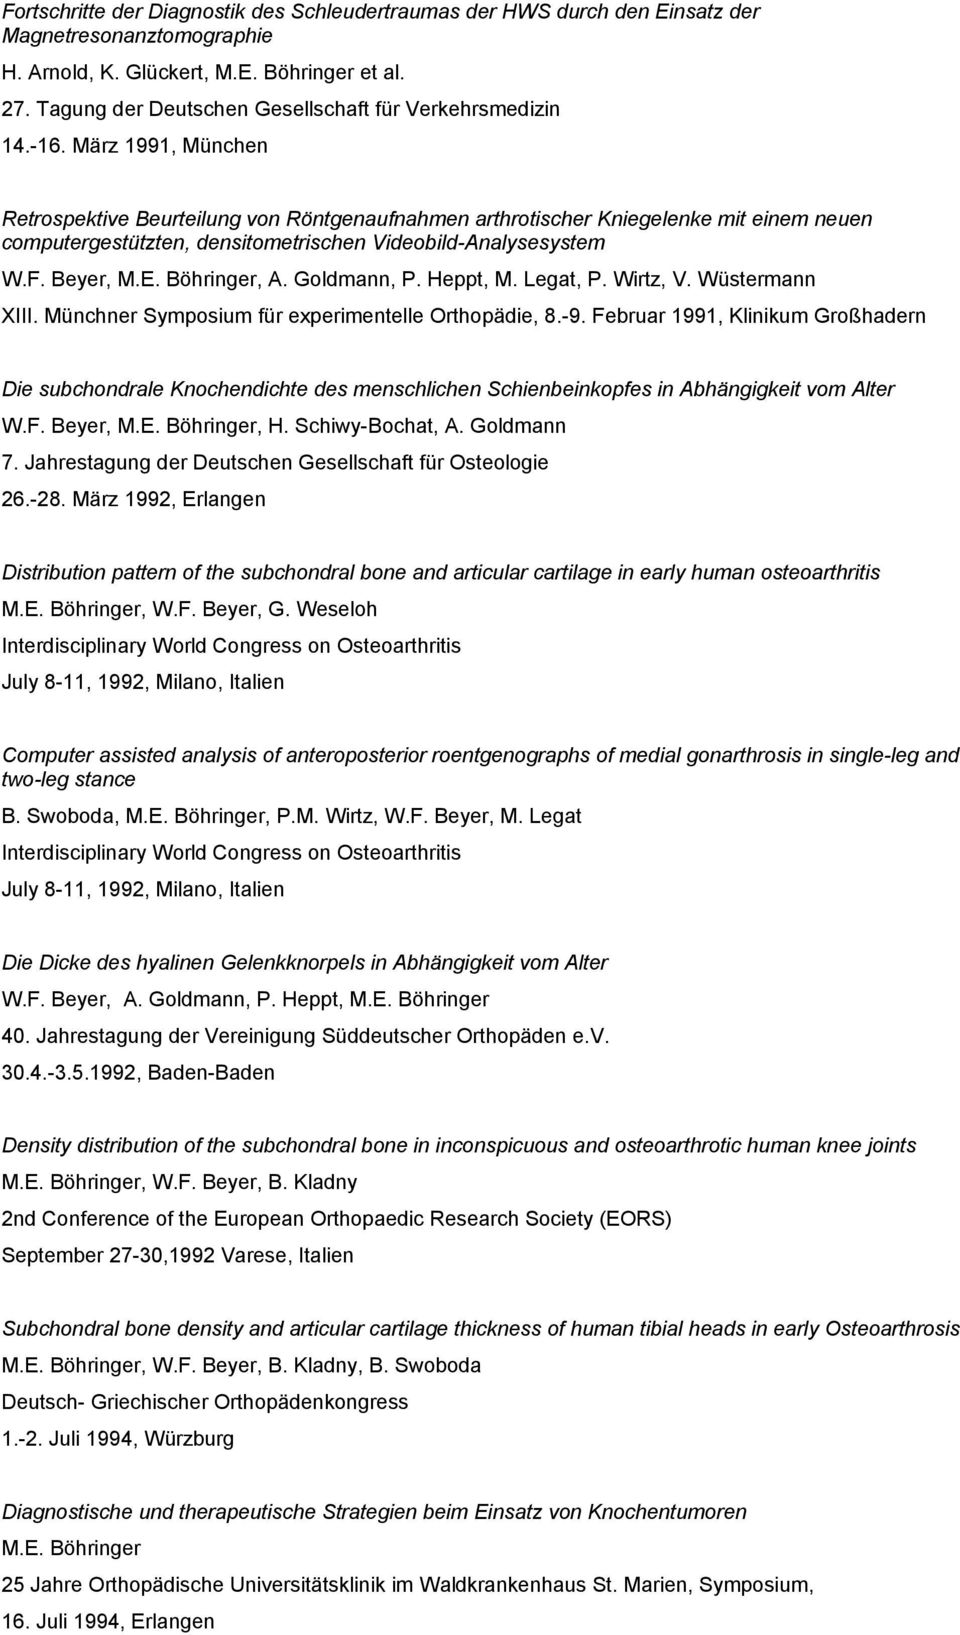 März 1991, München Retrospektive Beurteilung von Röntgenaufnahmen arthrotischer Kniegelenke mit einem neuen computergestützten, densitometrischen Videobild-Analysesystem, A. Goldmann, P. Heppt, M.